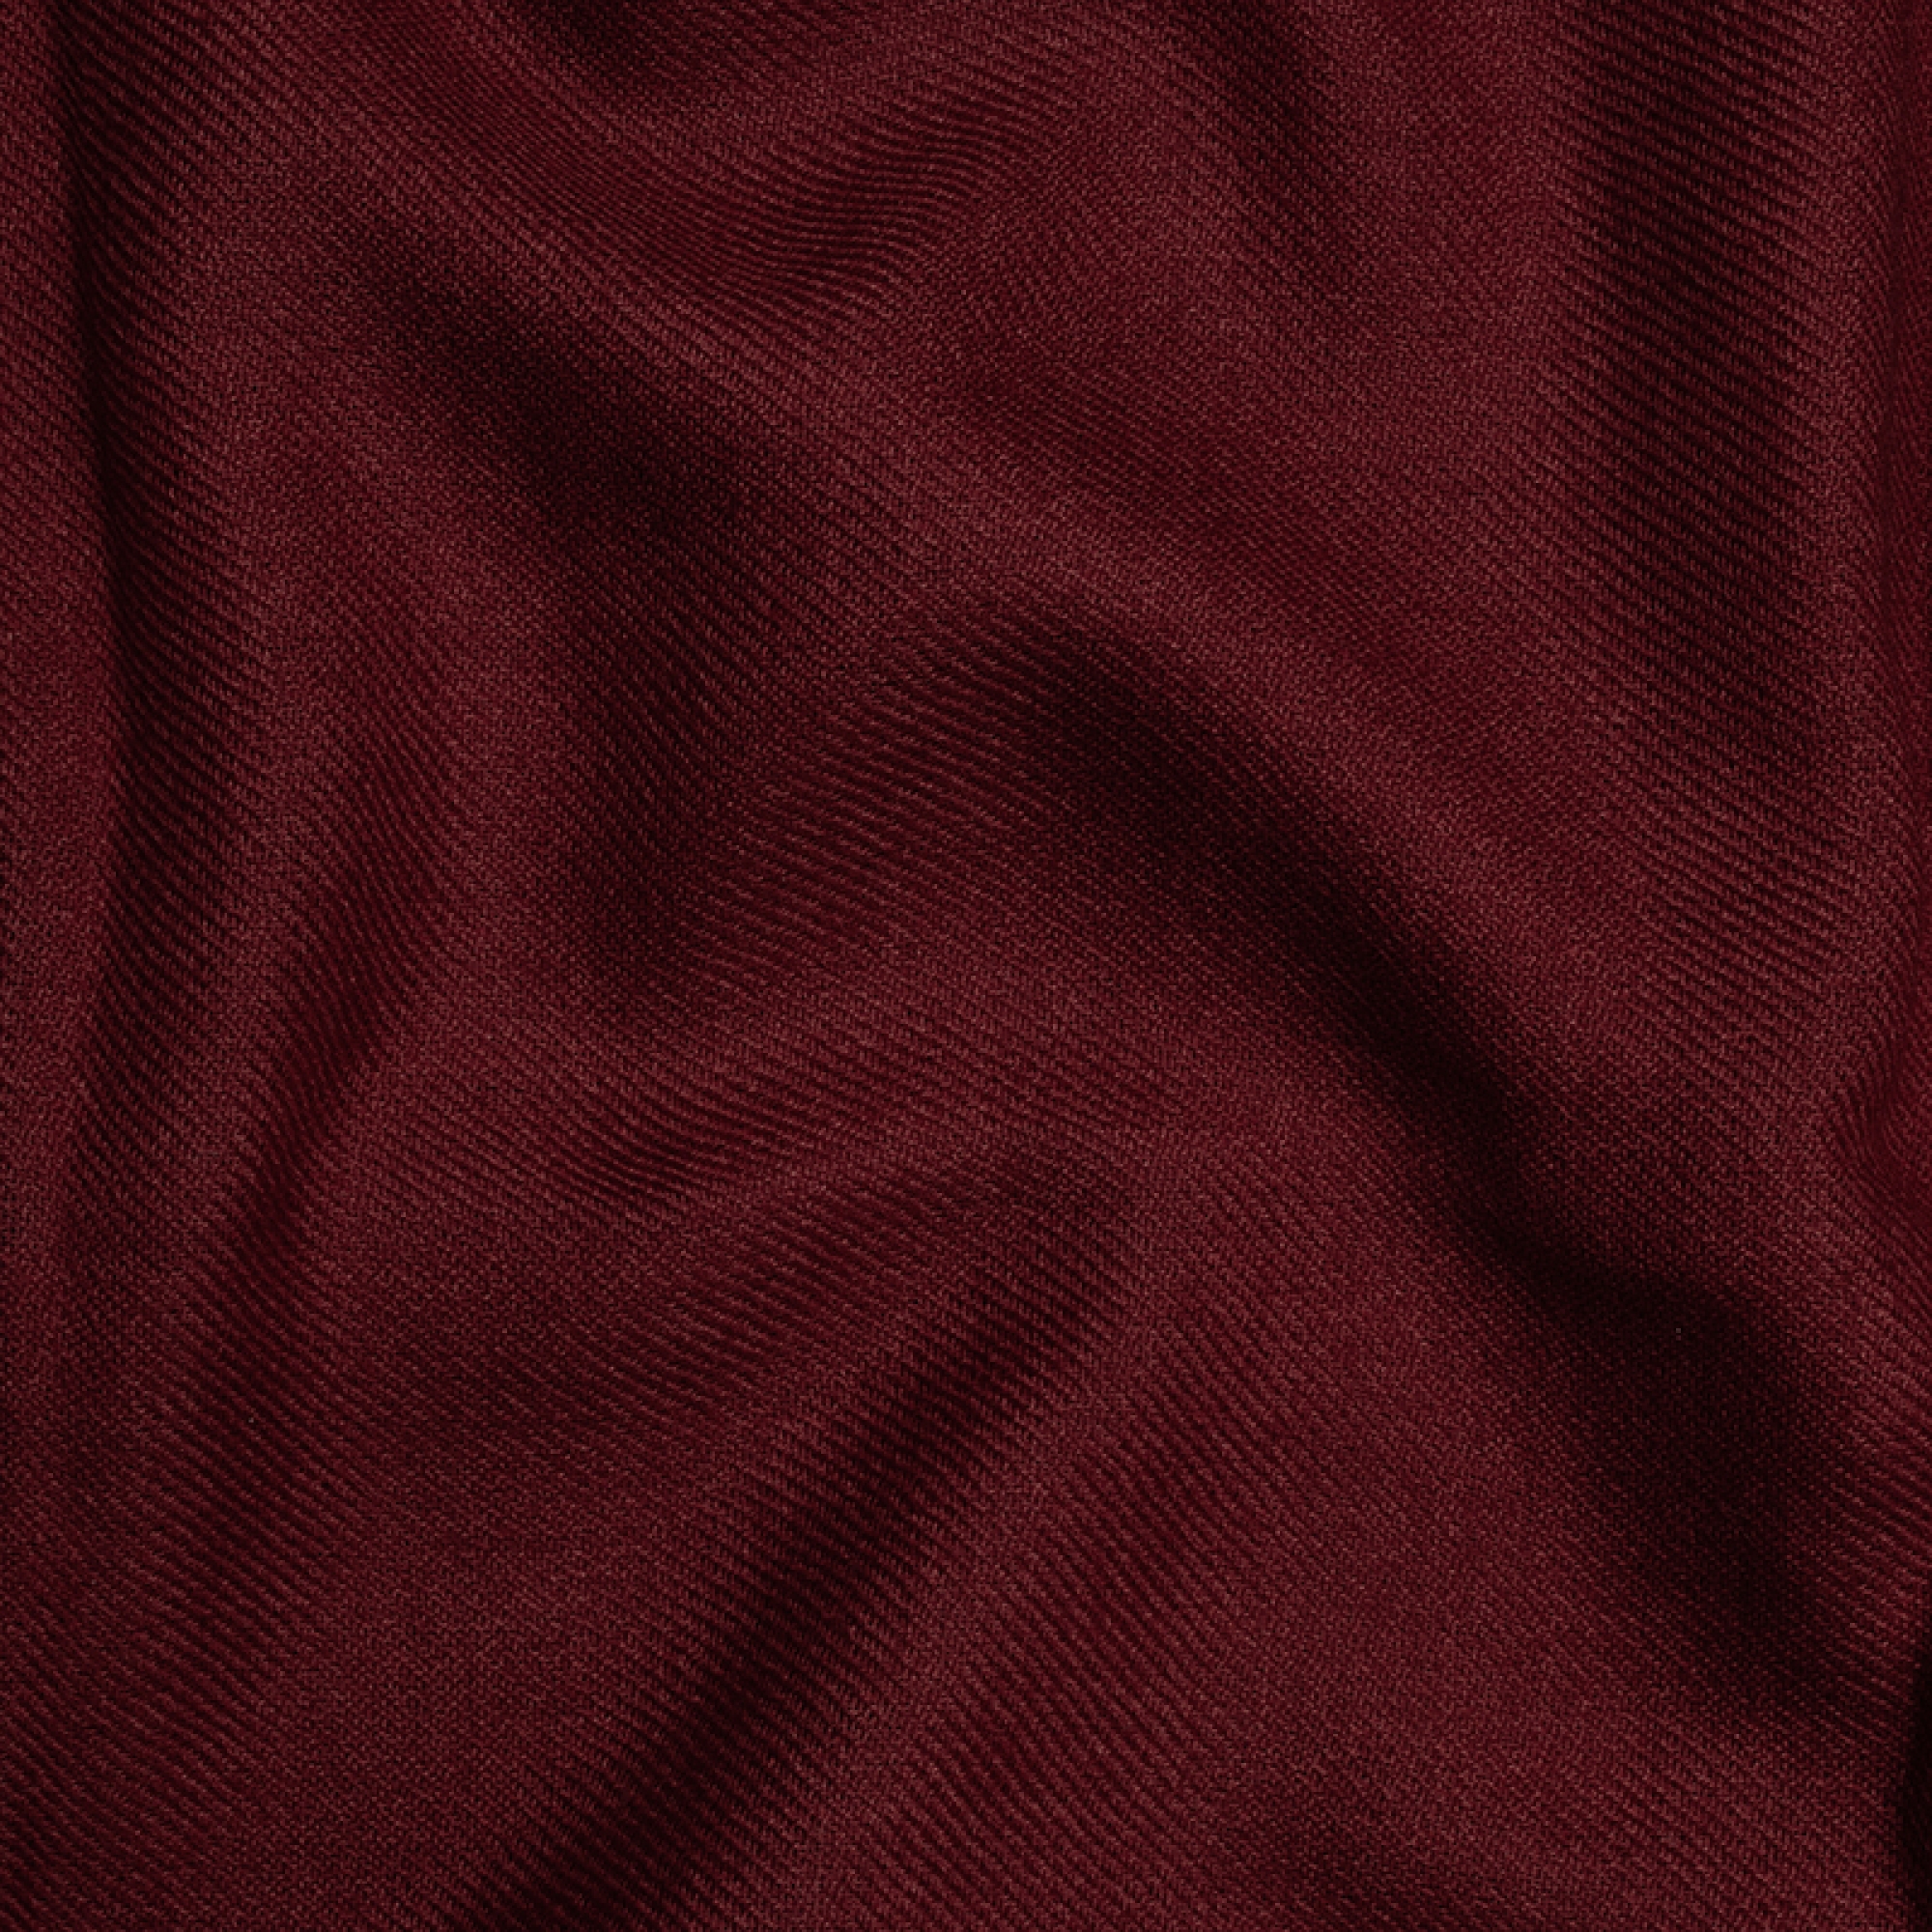 Cashmere accessories blanket toodoo plain l 220 x 220 dark auburn 220x220cm